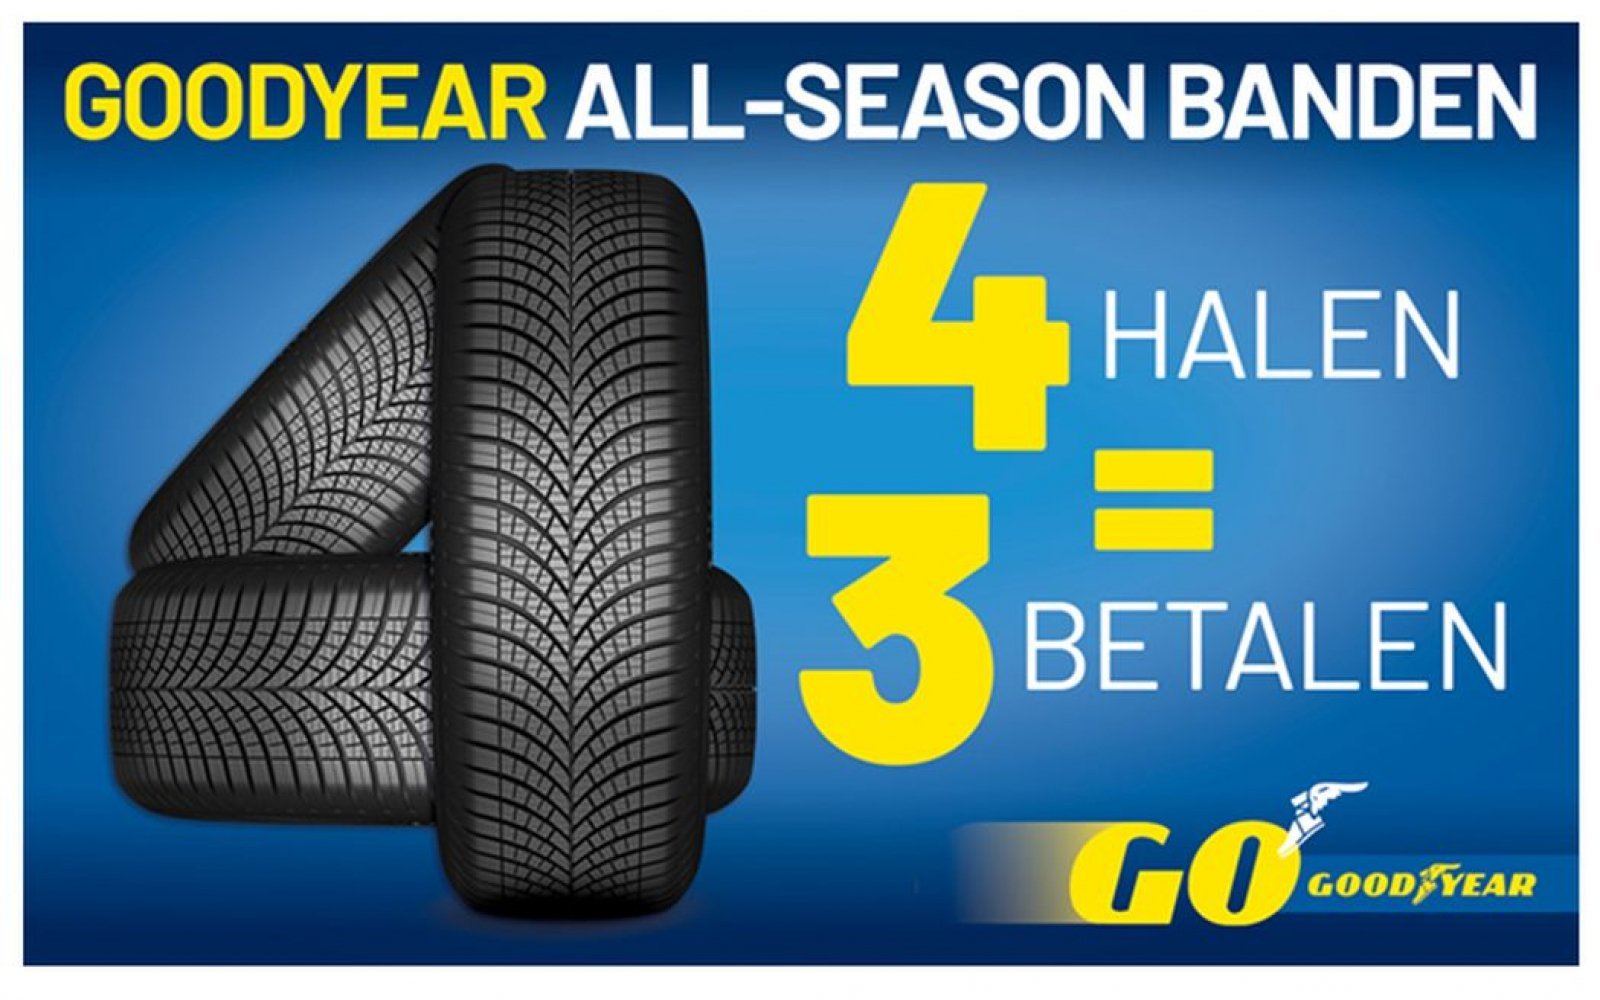 Pneus de verão, pneus de inverno, pneus para todas as estações: qual você deve ter?